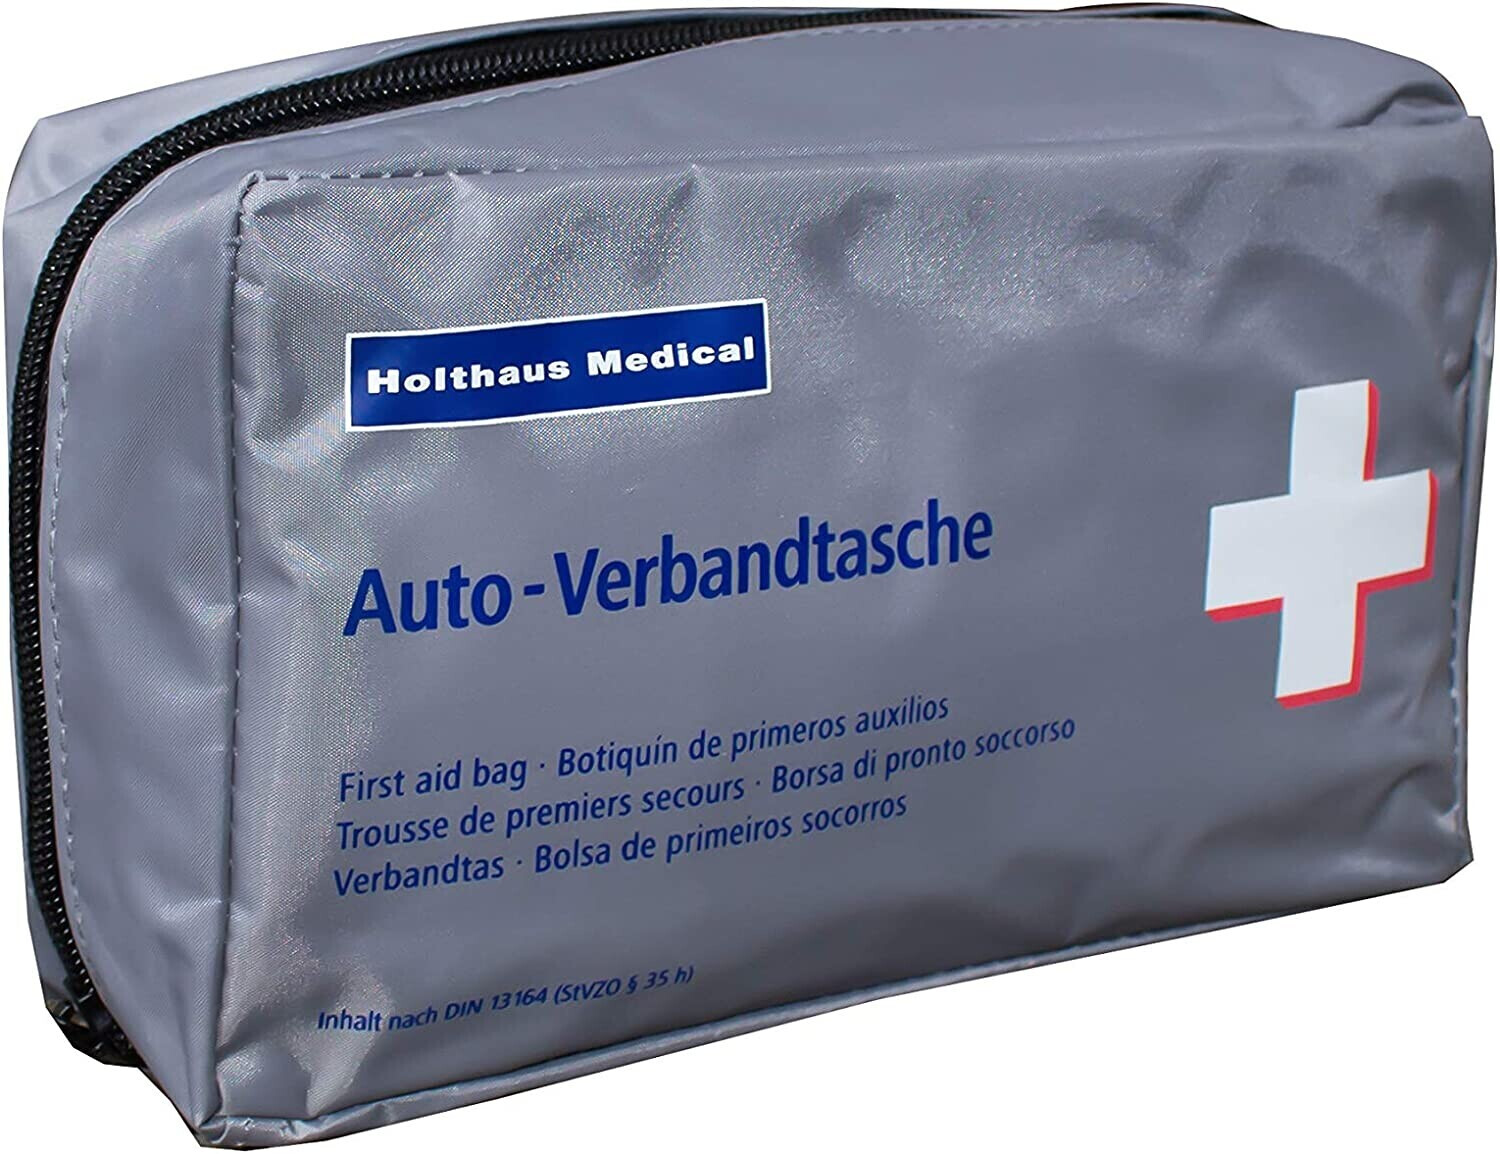 Holthaus Auto-Verbandtasche 62377 ab 4,83 €